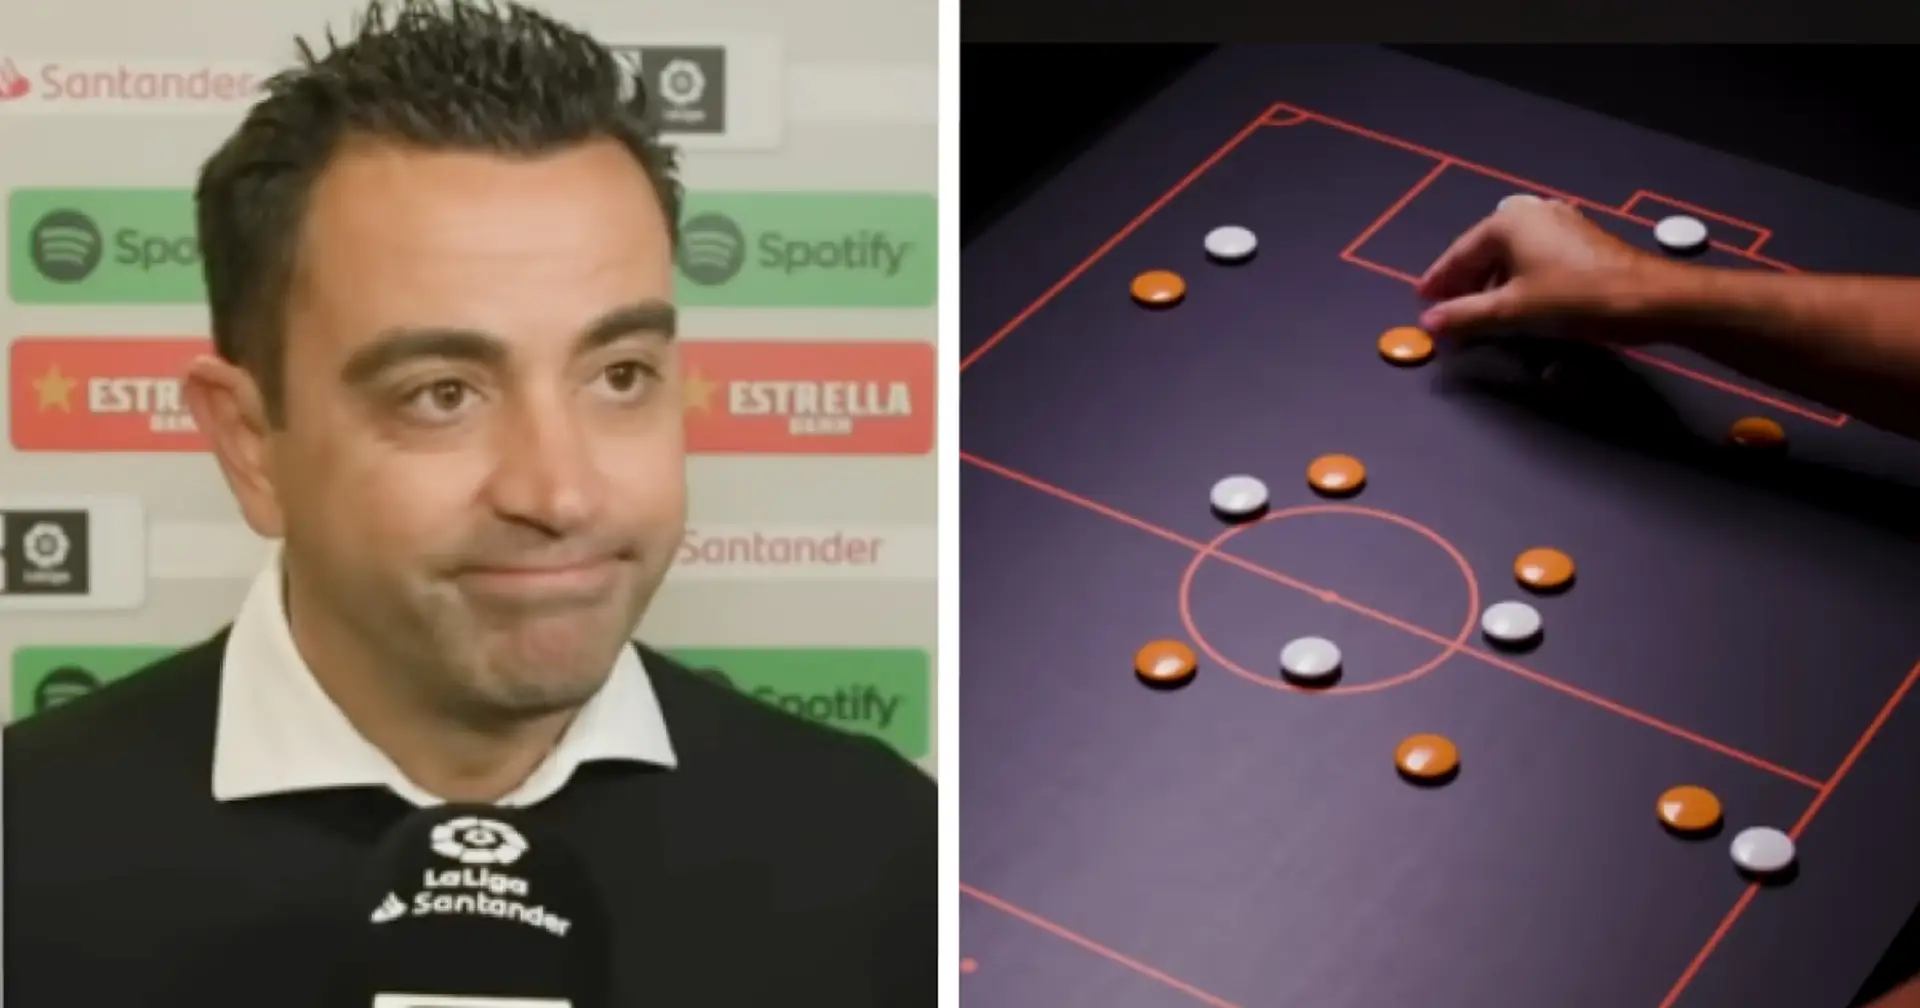 "Xavi le possède": un fan souligne l'incroyable bilan de Xavi contre un entraîneur de haut niveau de la Liga